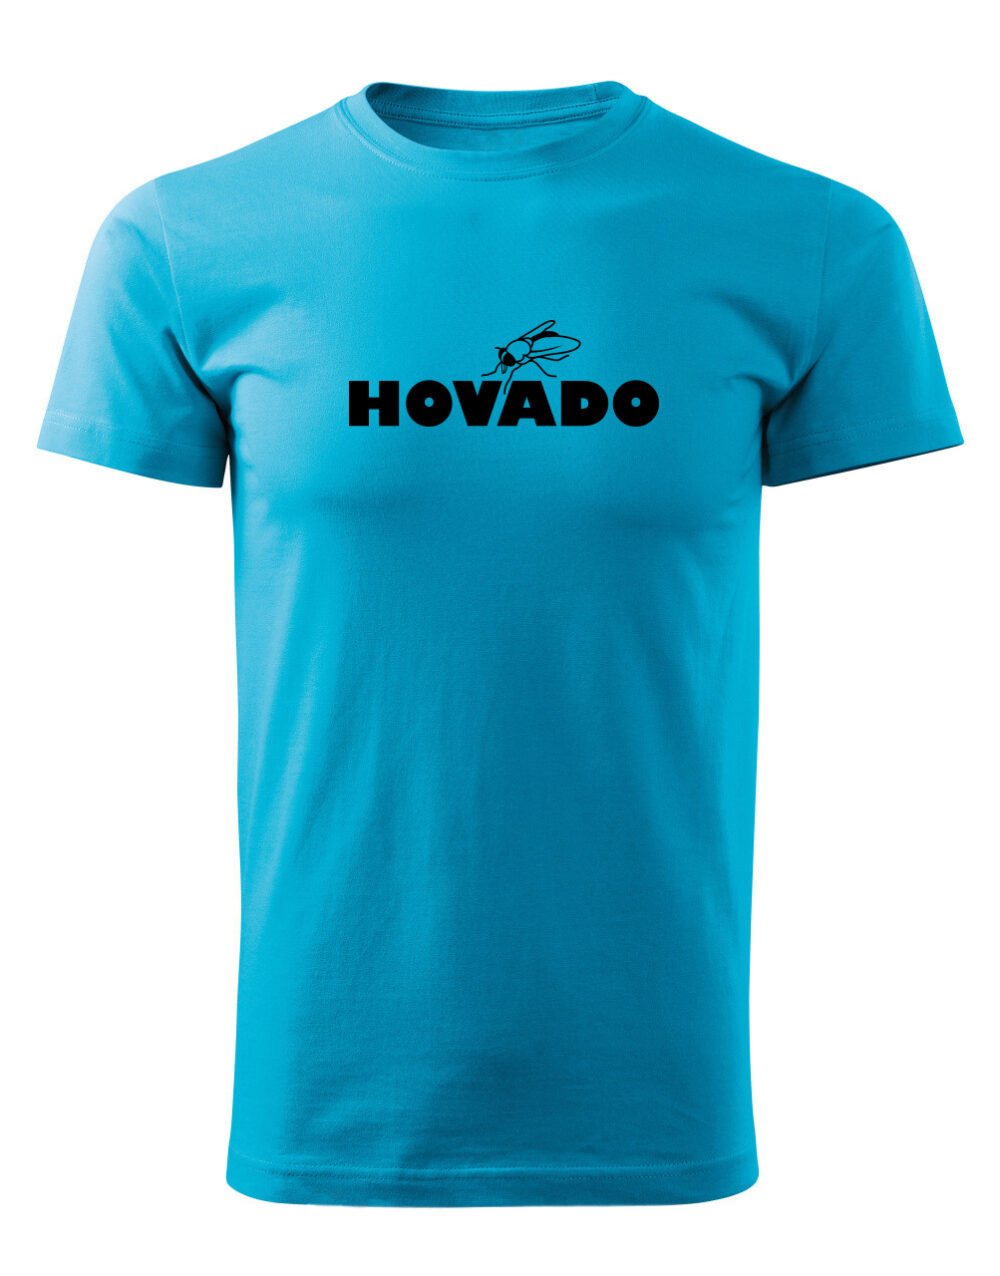 Pánské tričko s potiskem Hovado tyrkysová